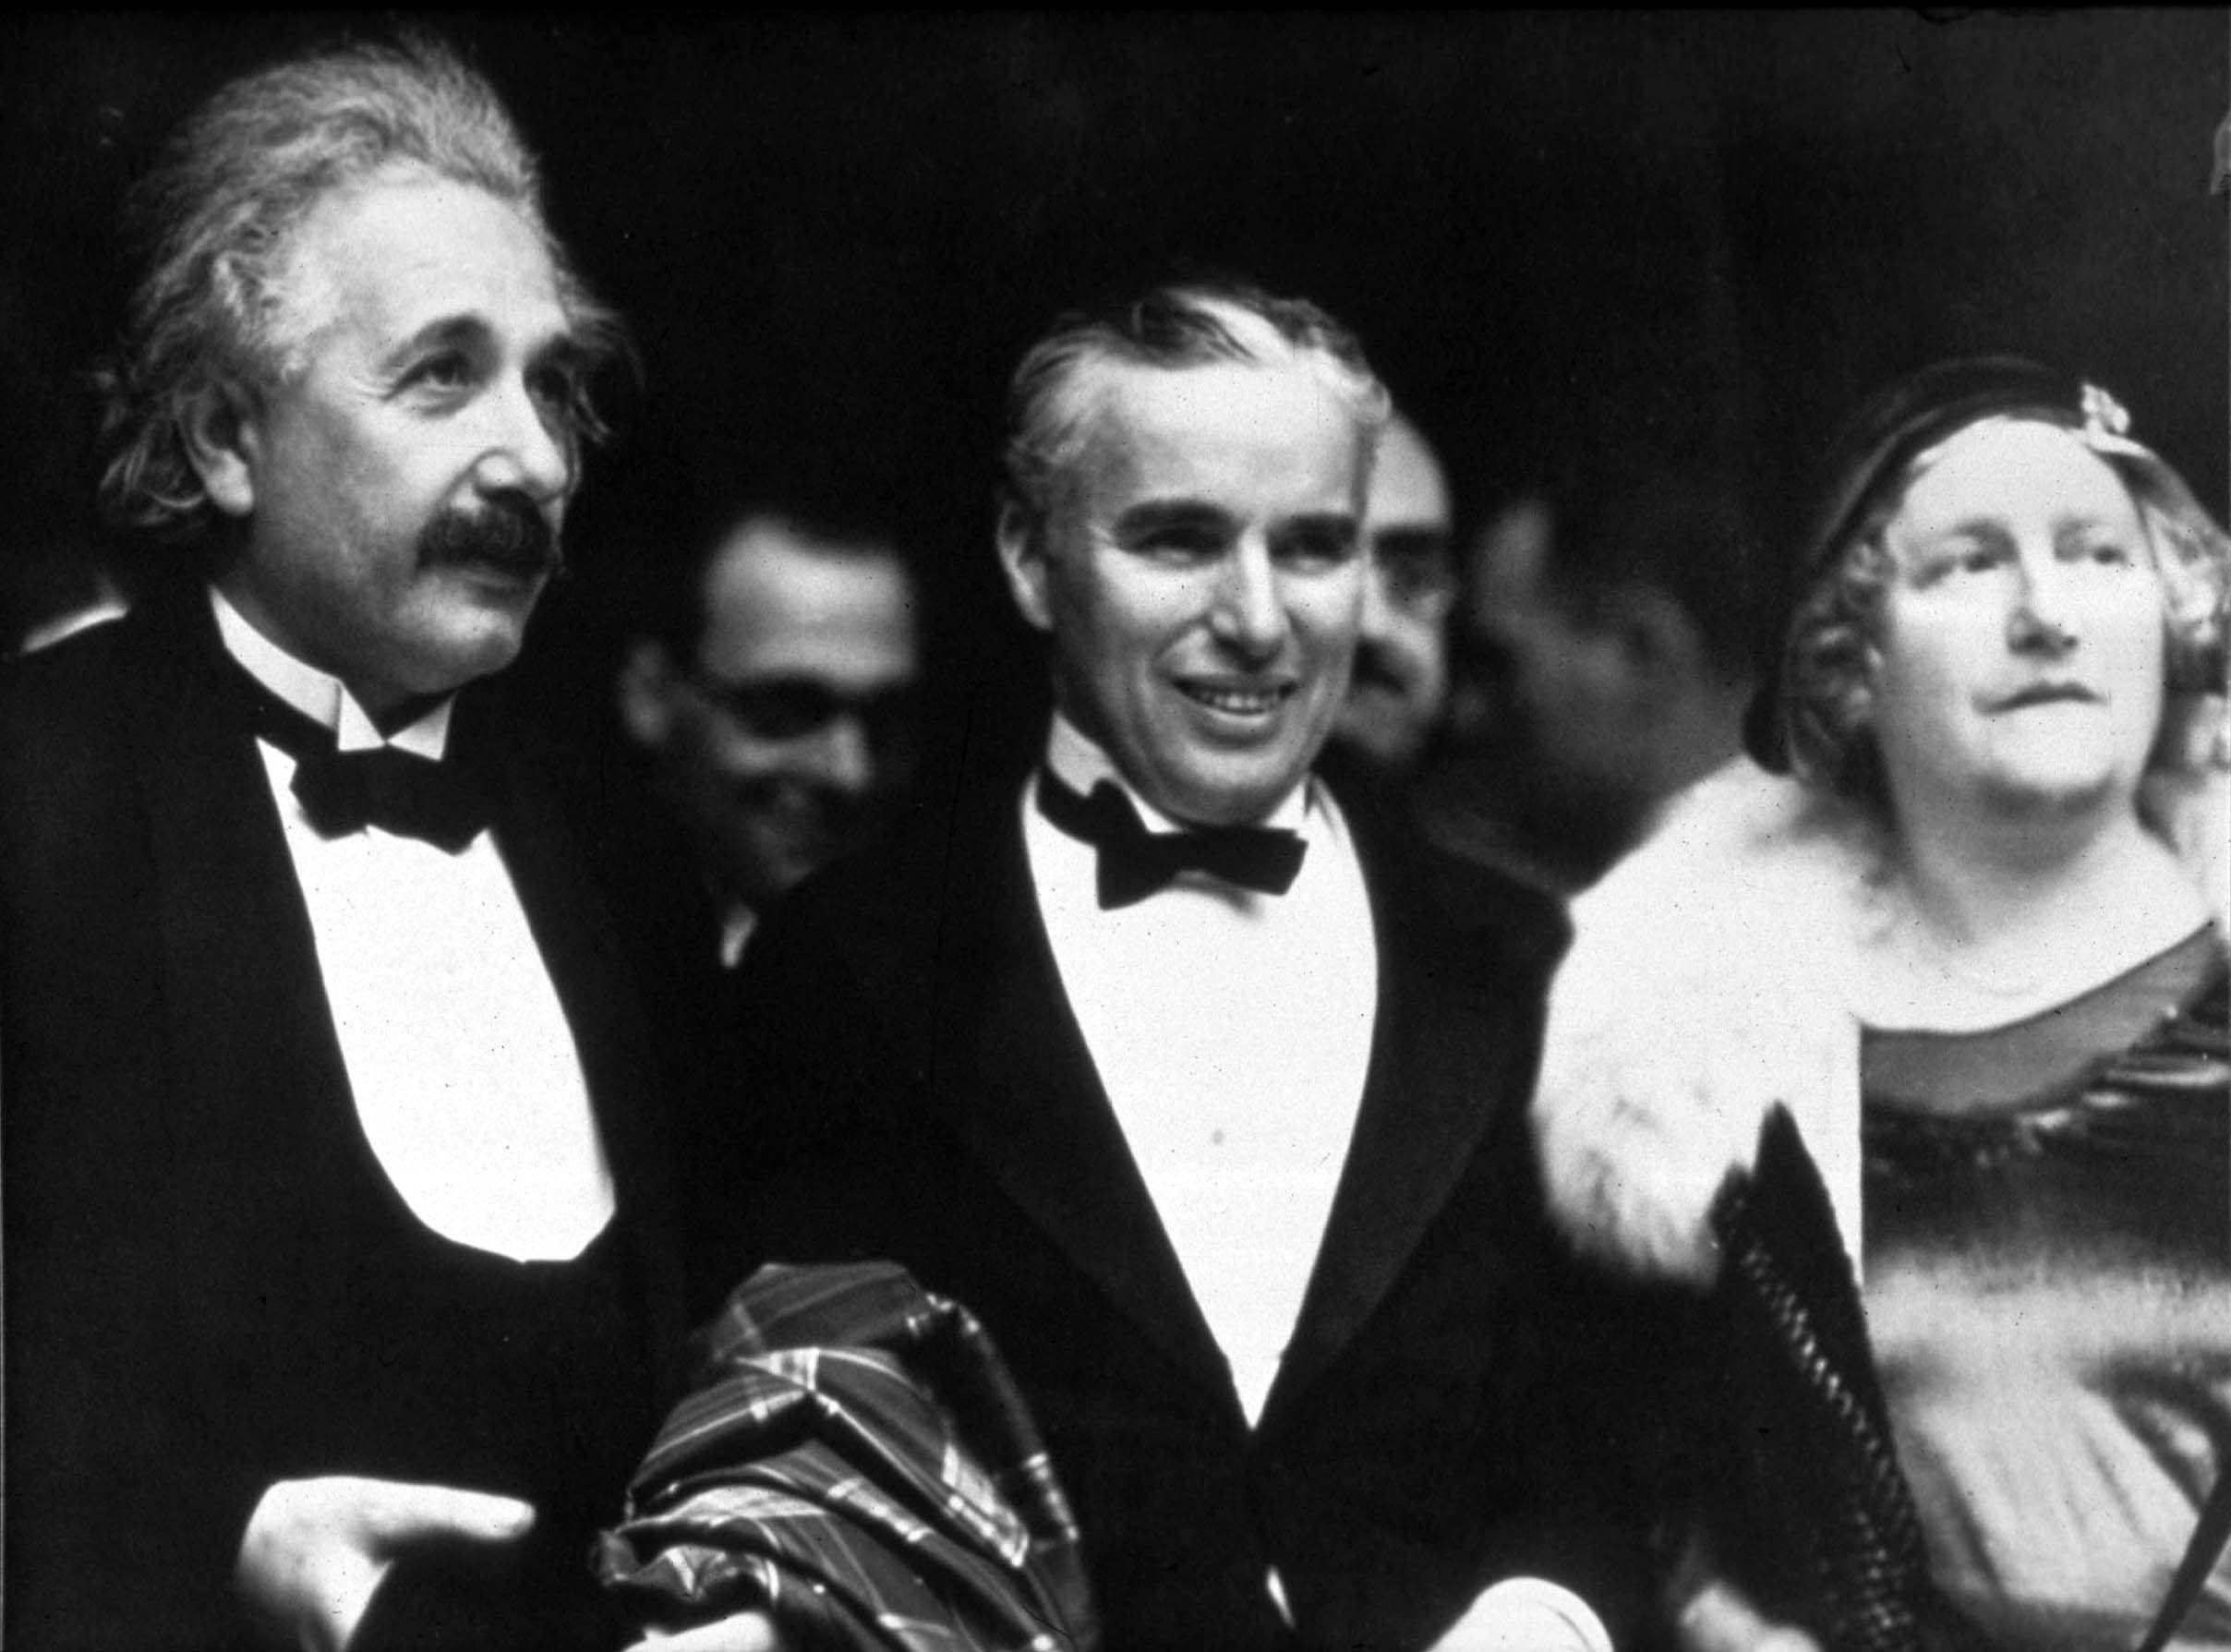 O físico Ablert Eintein (E) e a sua mulher, Elsa Einstein (D) com o ator e realizador Charles Chaplin (C)